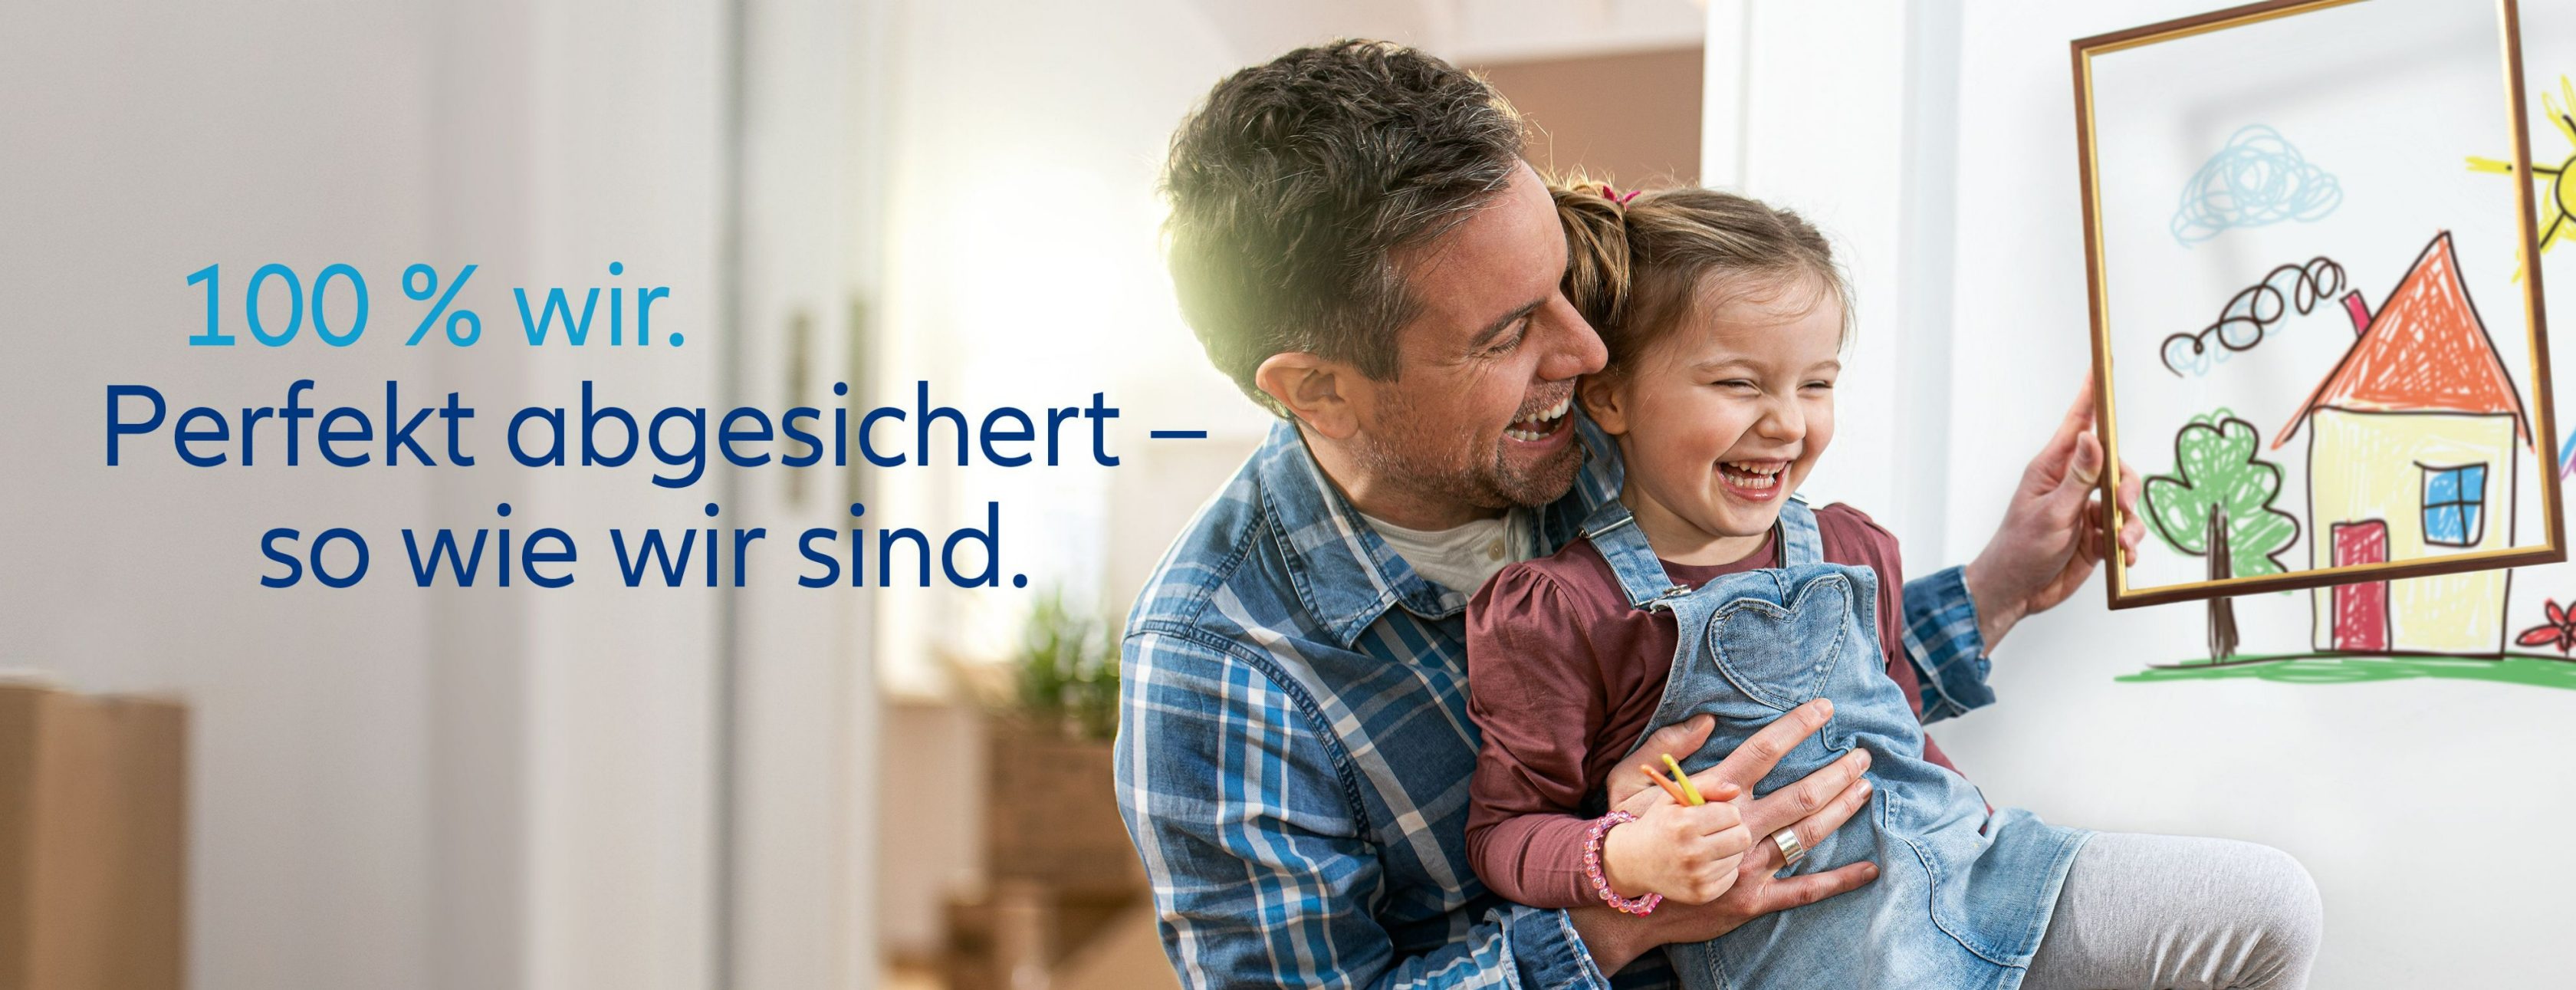 Allianz Versicherung Andre Schmidt Gommern - 100% wir. Perfekt abgesichert - so wie wir sind.